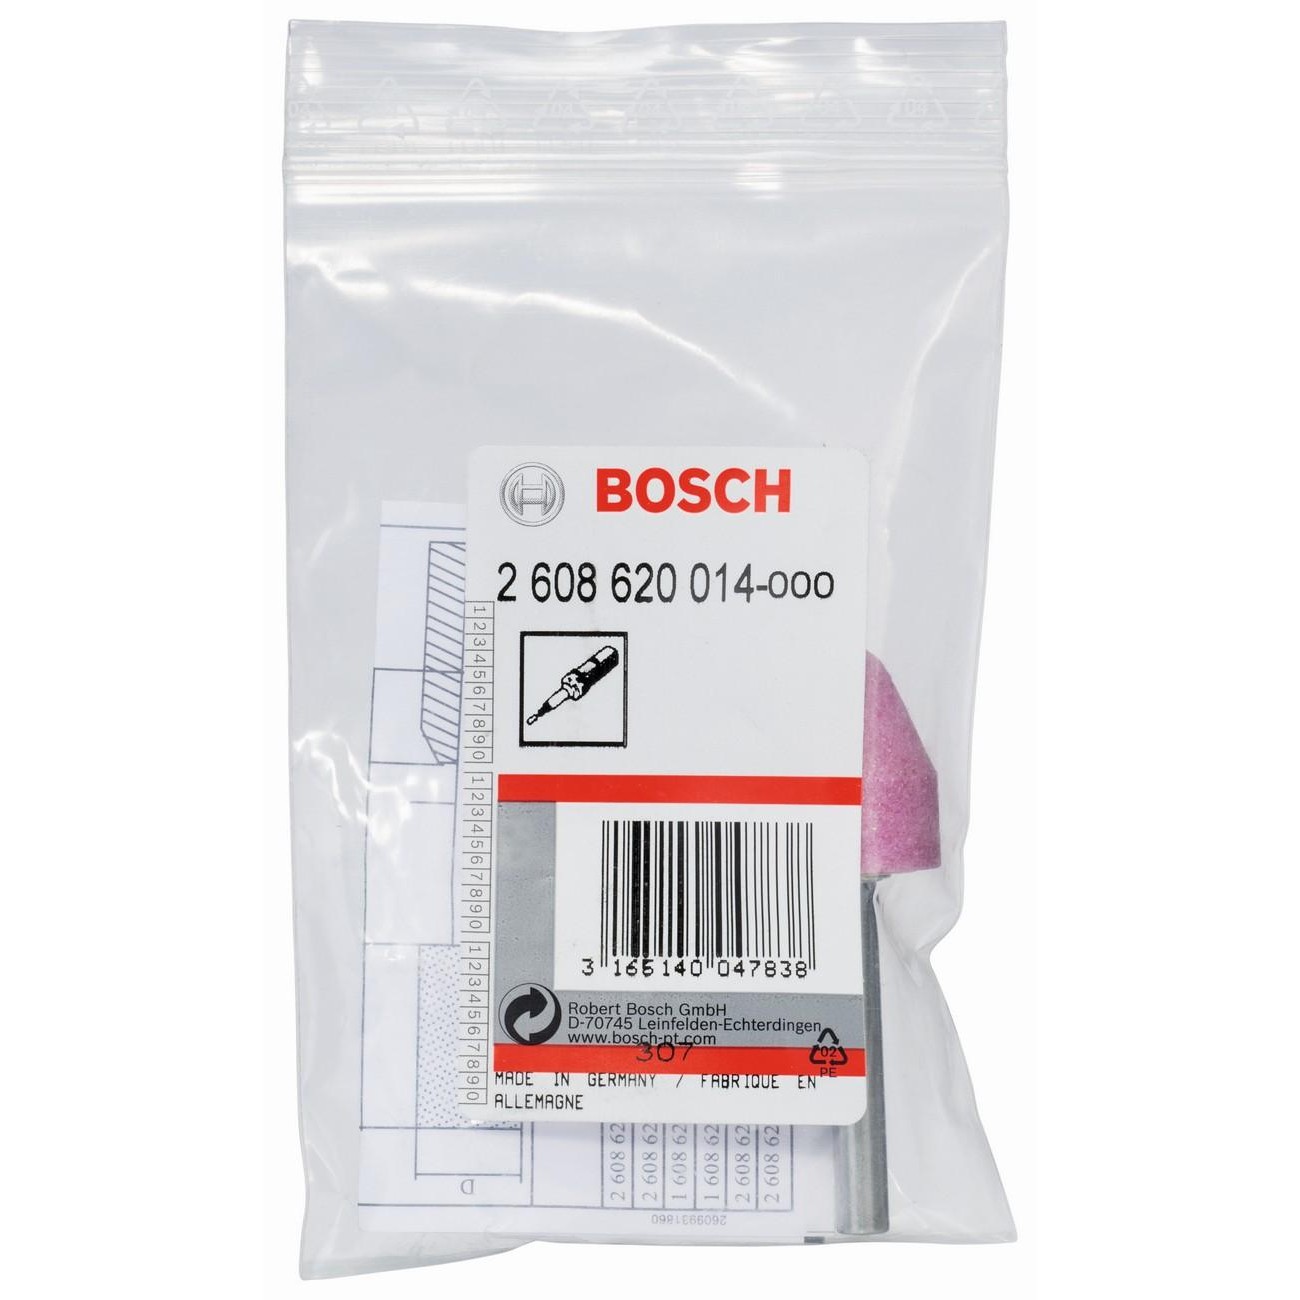 BOSCH Professional Шлифовъчен щифт конусен средно твърд 6 мм P60 20 мм 25 мм (2608620014)